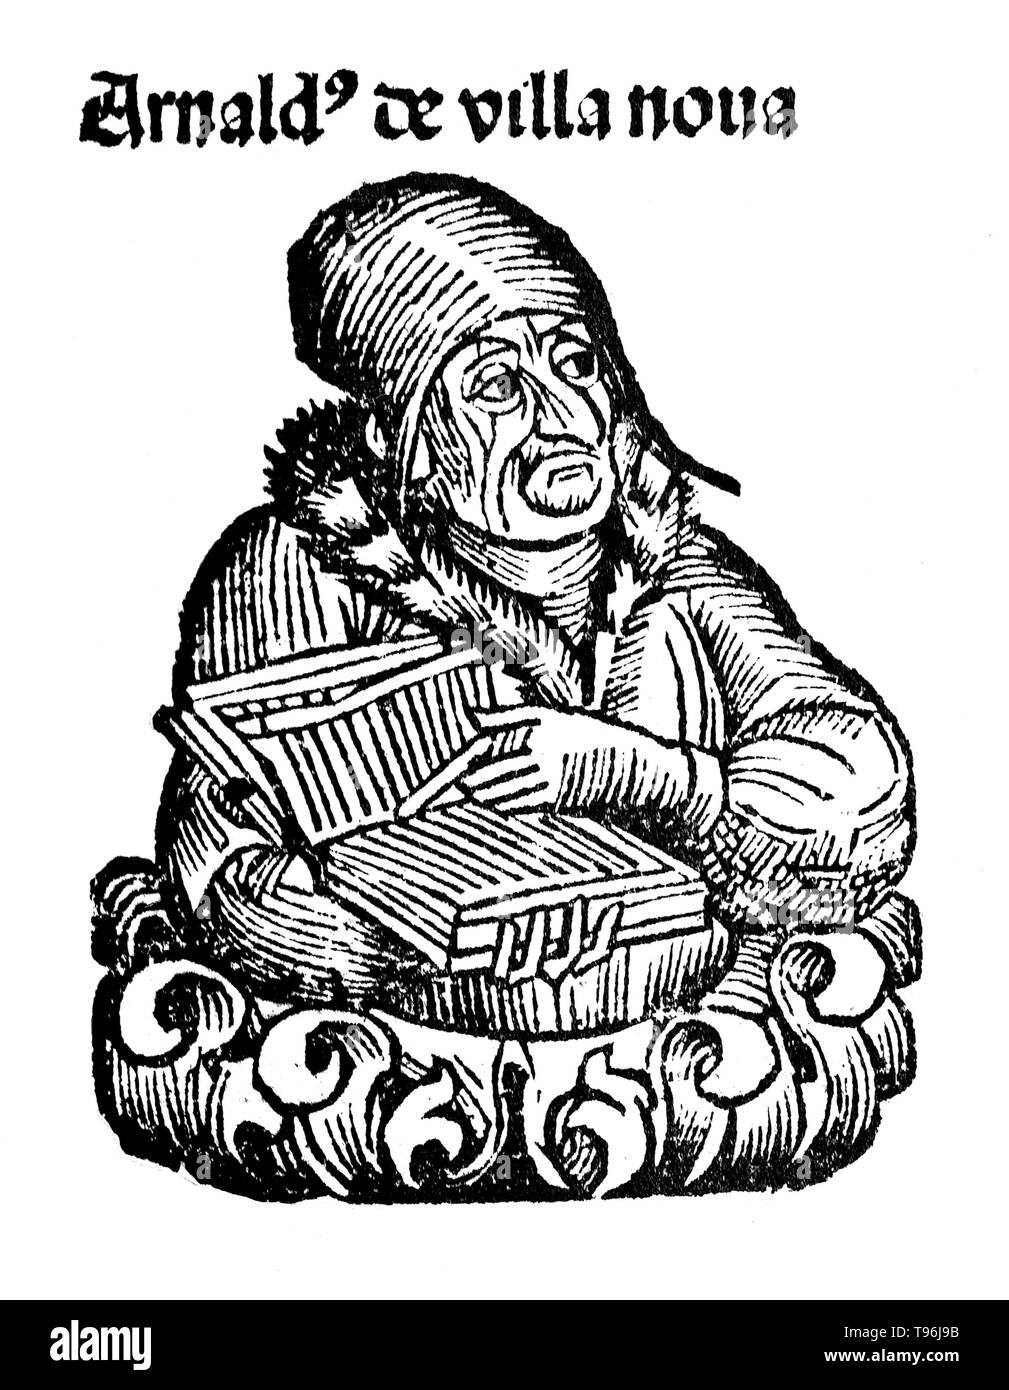 Arnaldus de Villa Nova (1235-1311) era un alchimista spagnolo, astrologo e medico. Ha studiato chimica, medicina, fisica e filosofia araba. Egli è accreditato con la traduzione di un certo numero di testi medici dall arabo, comprese opere di Ibn Sina (Avicenna), Qusta ibn Luqa (Costa ben Luca), e Galen. Molti scritti alchemici, compresi Thesaurus Thesaurorum o rosarius Philosophorum, Novum Lumen, e Flos Florum, sono anche a lui attribuite, ma sono di molto dubbia autenticità. Foto Stock